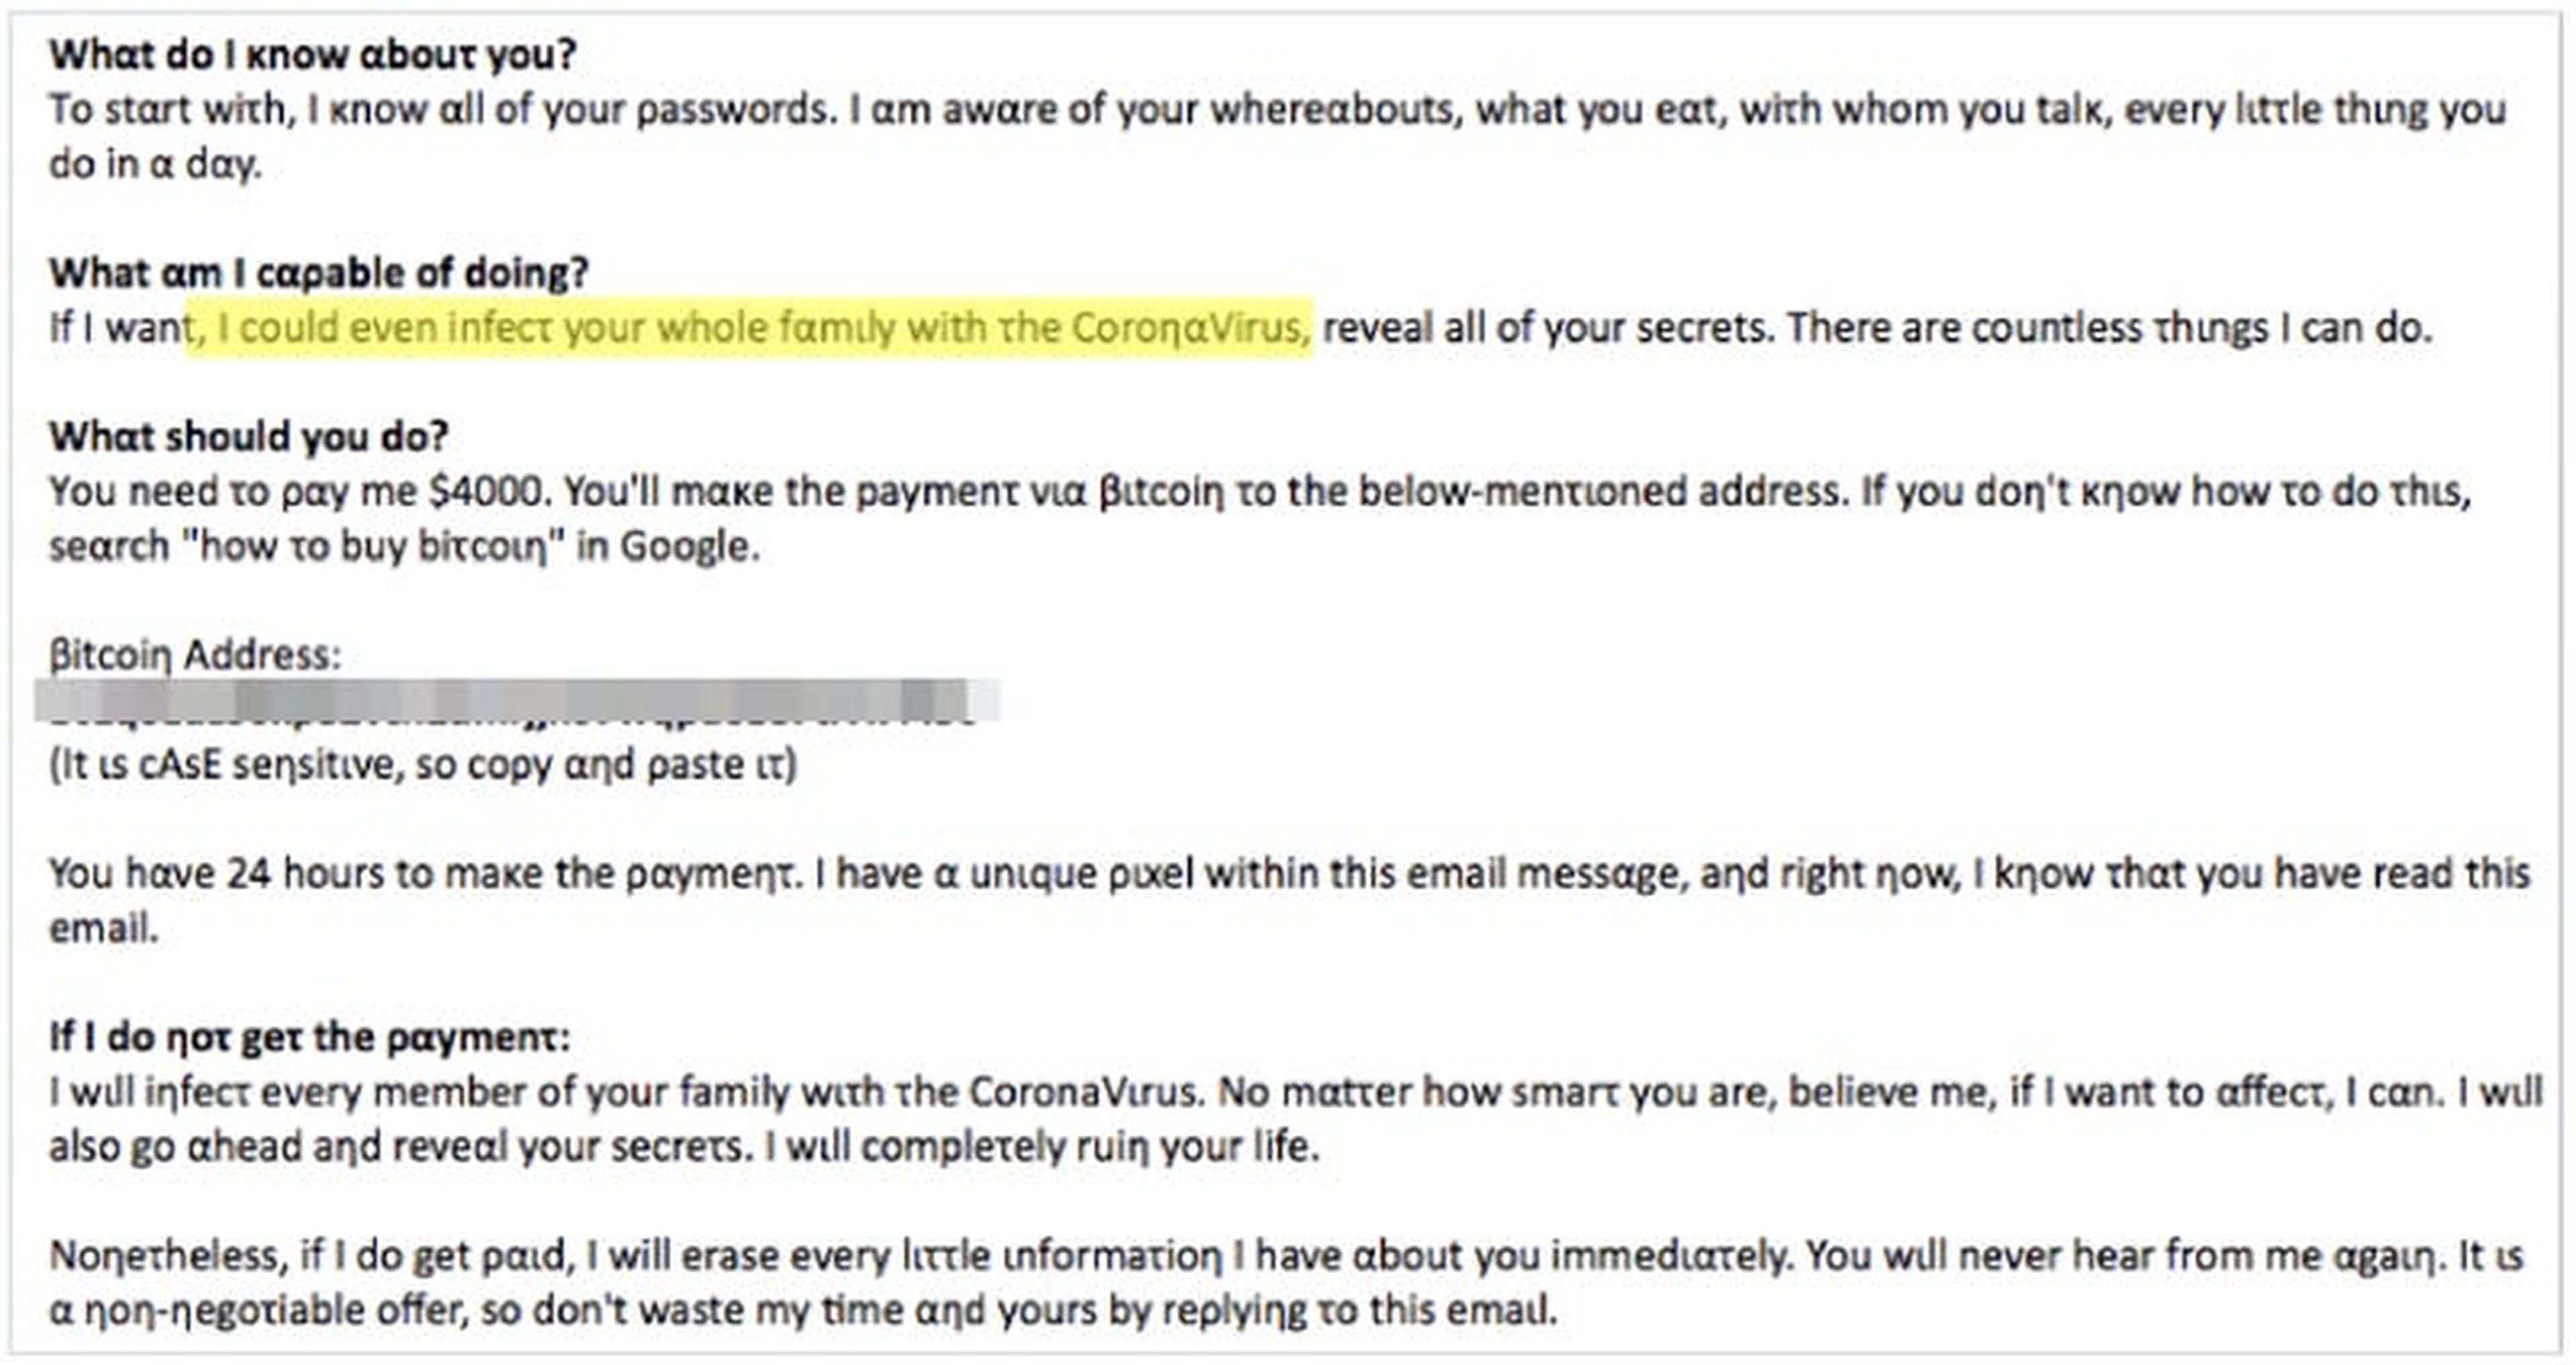 Intsights descubrió que esta despiadada nota de rescate apelaba a la COVID-19 como parte de una estafa de ransomware que bloqueaba los ordenadores que exigían el pago.